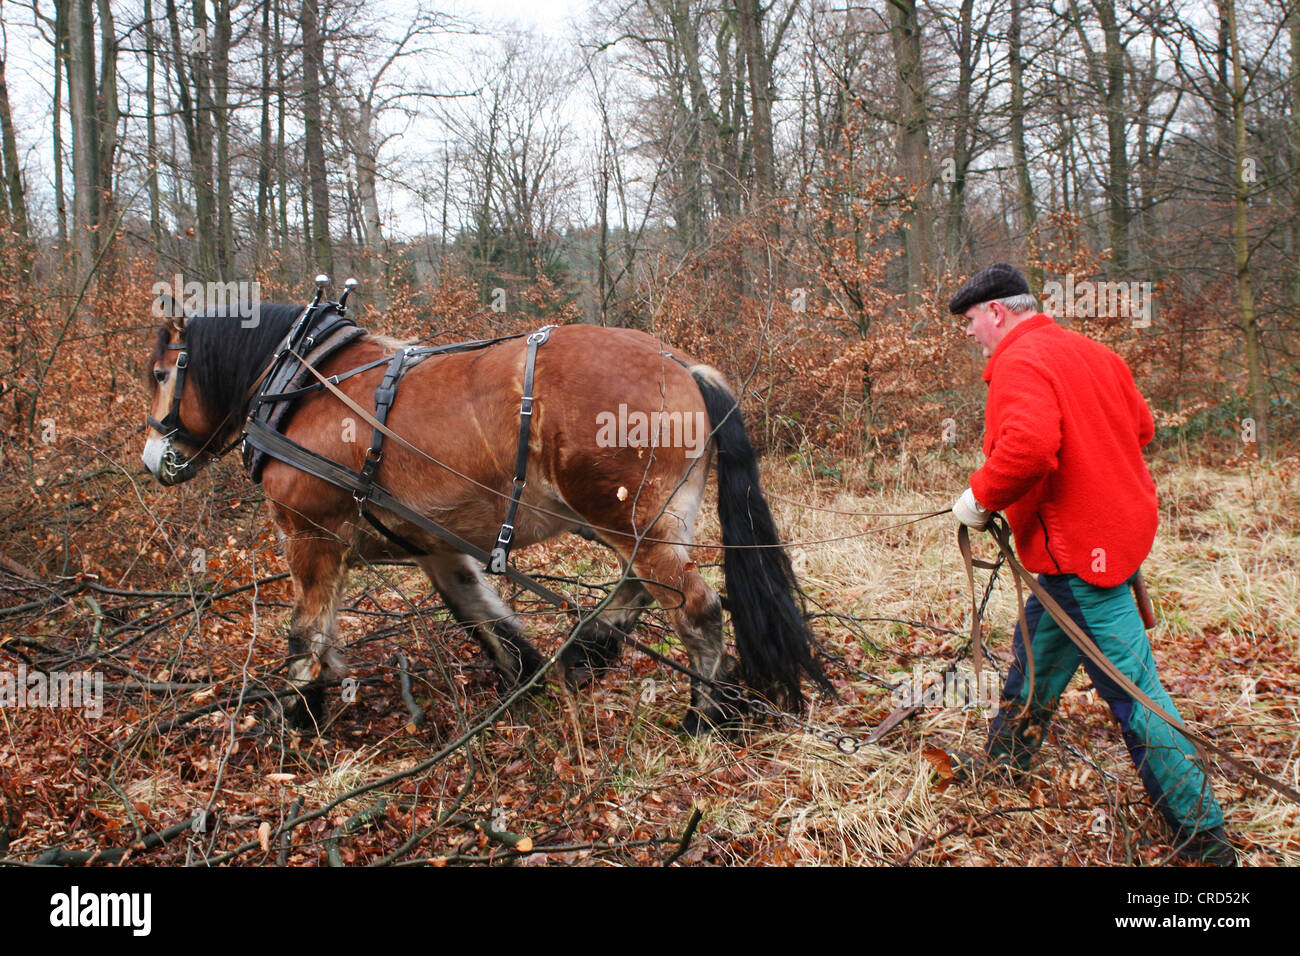 Projet de Westphalie Rheinish Cheval (Equus przewalskii f. caballus), projet de cheval dans une forêt, Allemagne, Rhénanie du Nord-Westphalie Banque D'Images